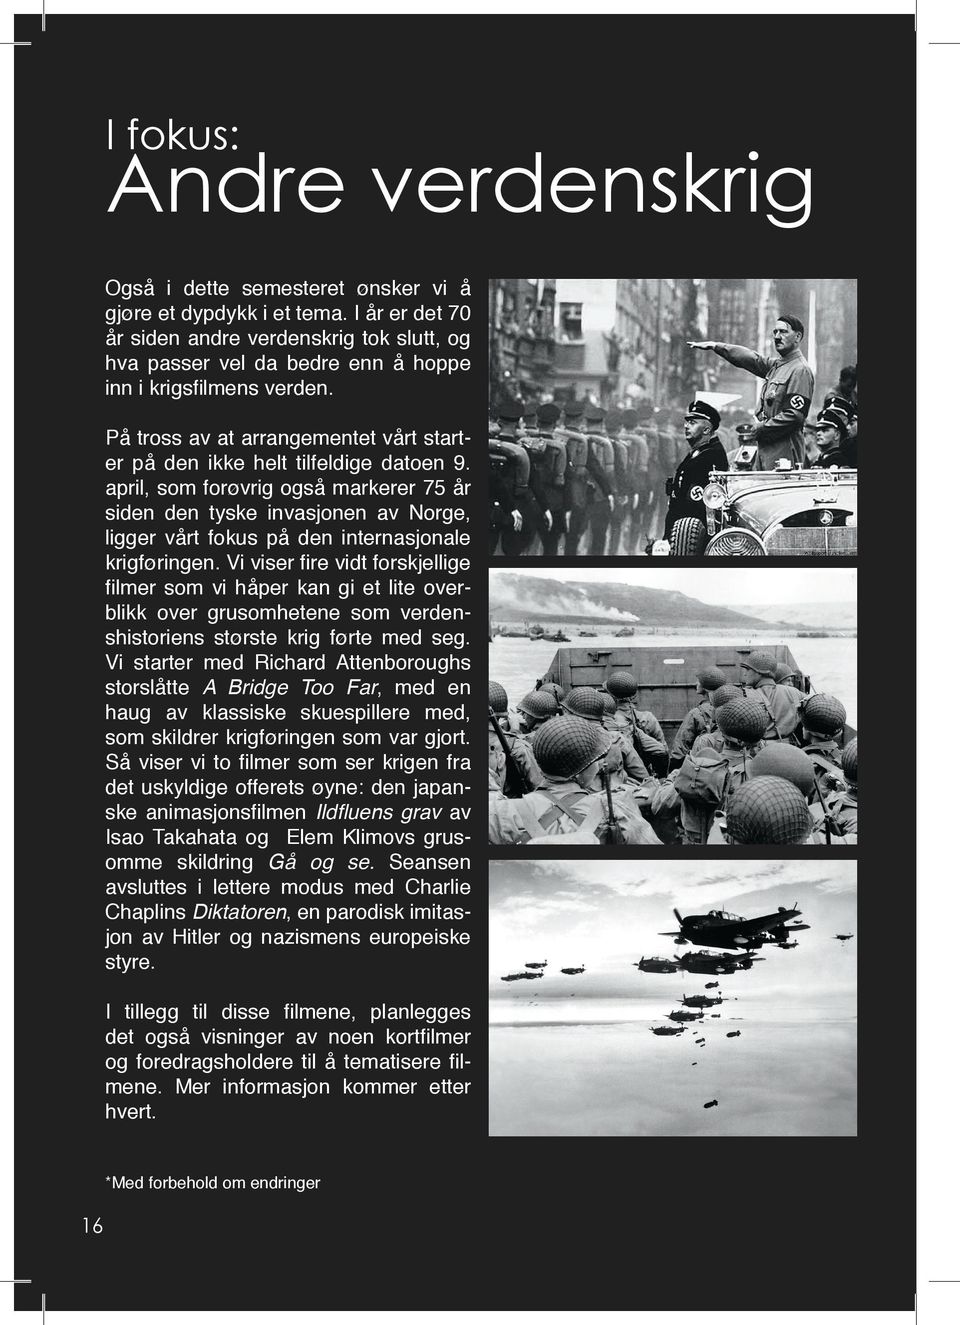 april, som forøvrig også markerer 75 år siden den tyske invasjonen av Norge, ligger vårt fokus på den internasjonale krigføringen.